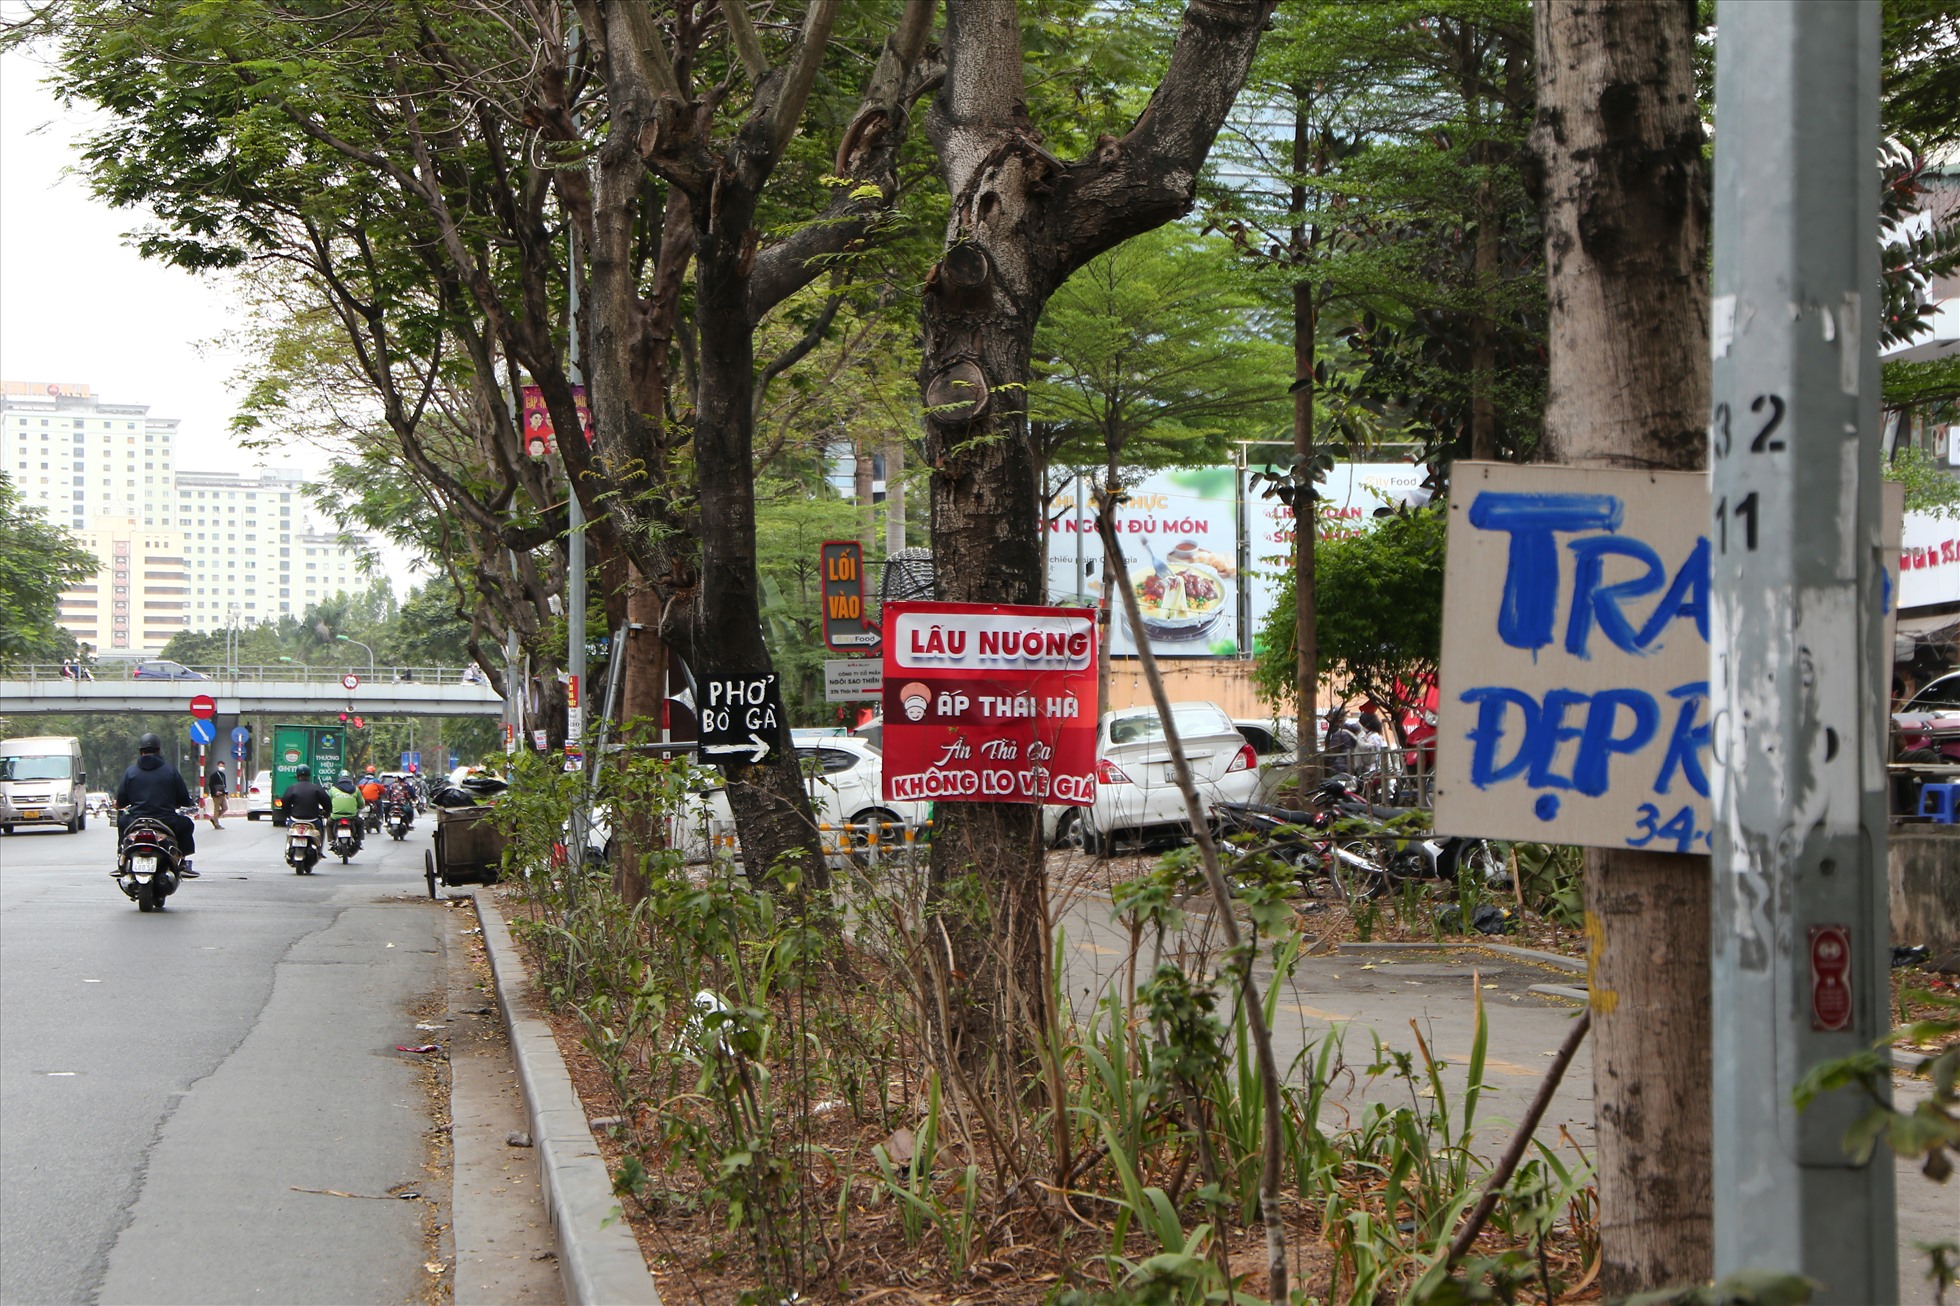 Nhiền biển quảng cáo được treo dọc tuyến đường dành cho người đi bộ trên phố Thái Hà. Ảnh: Vĩnh Hoàng